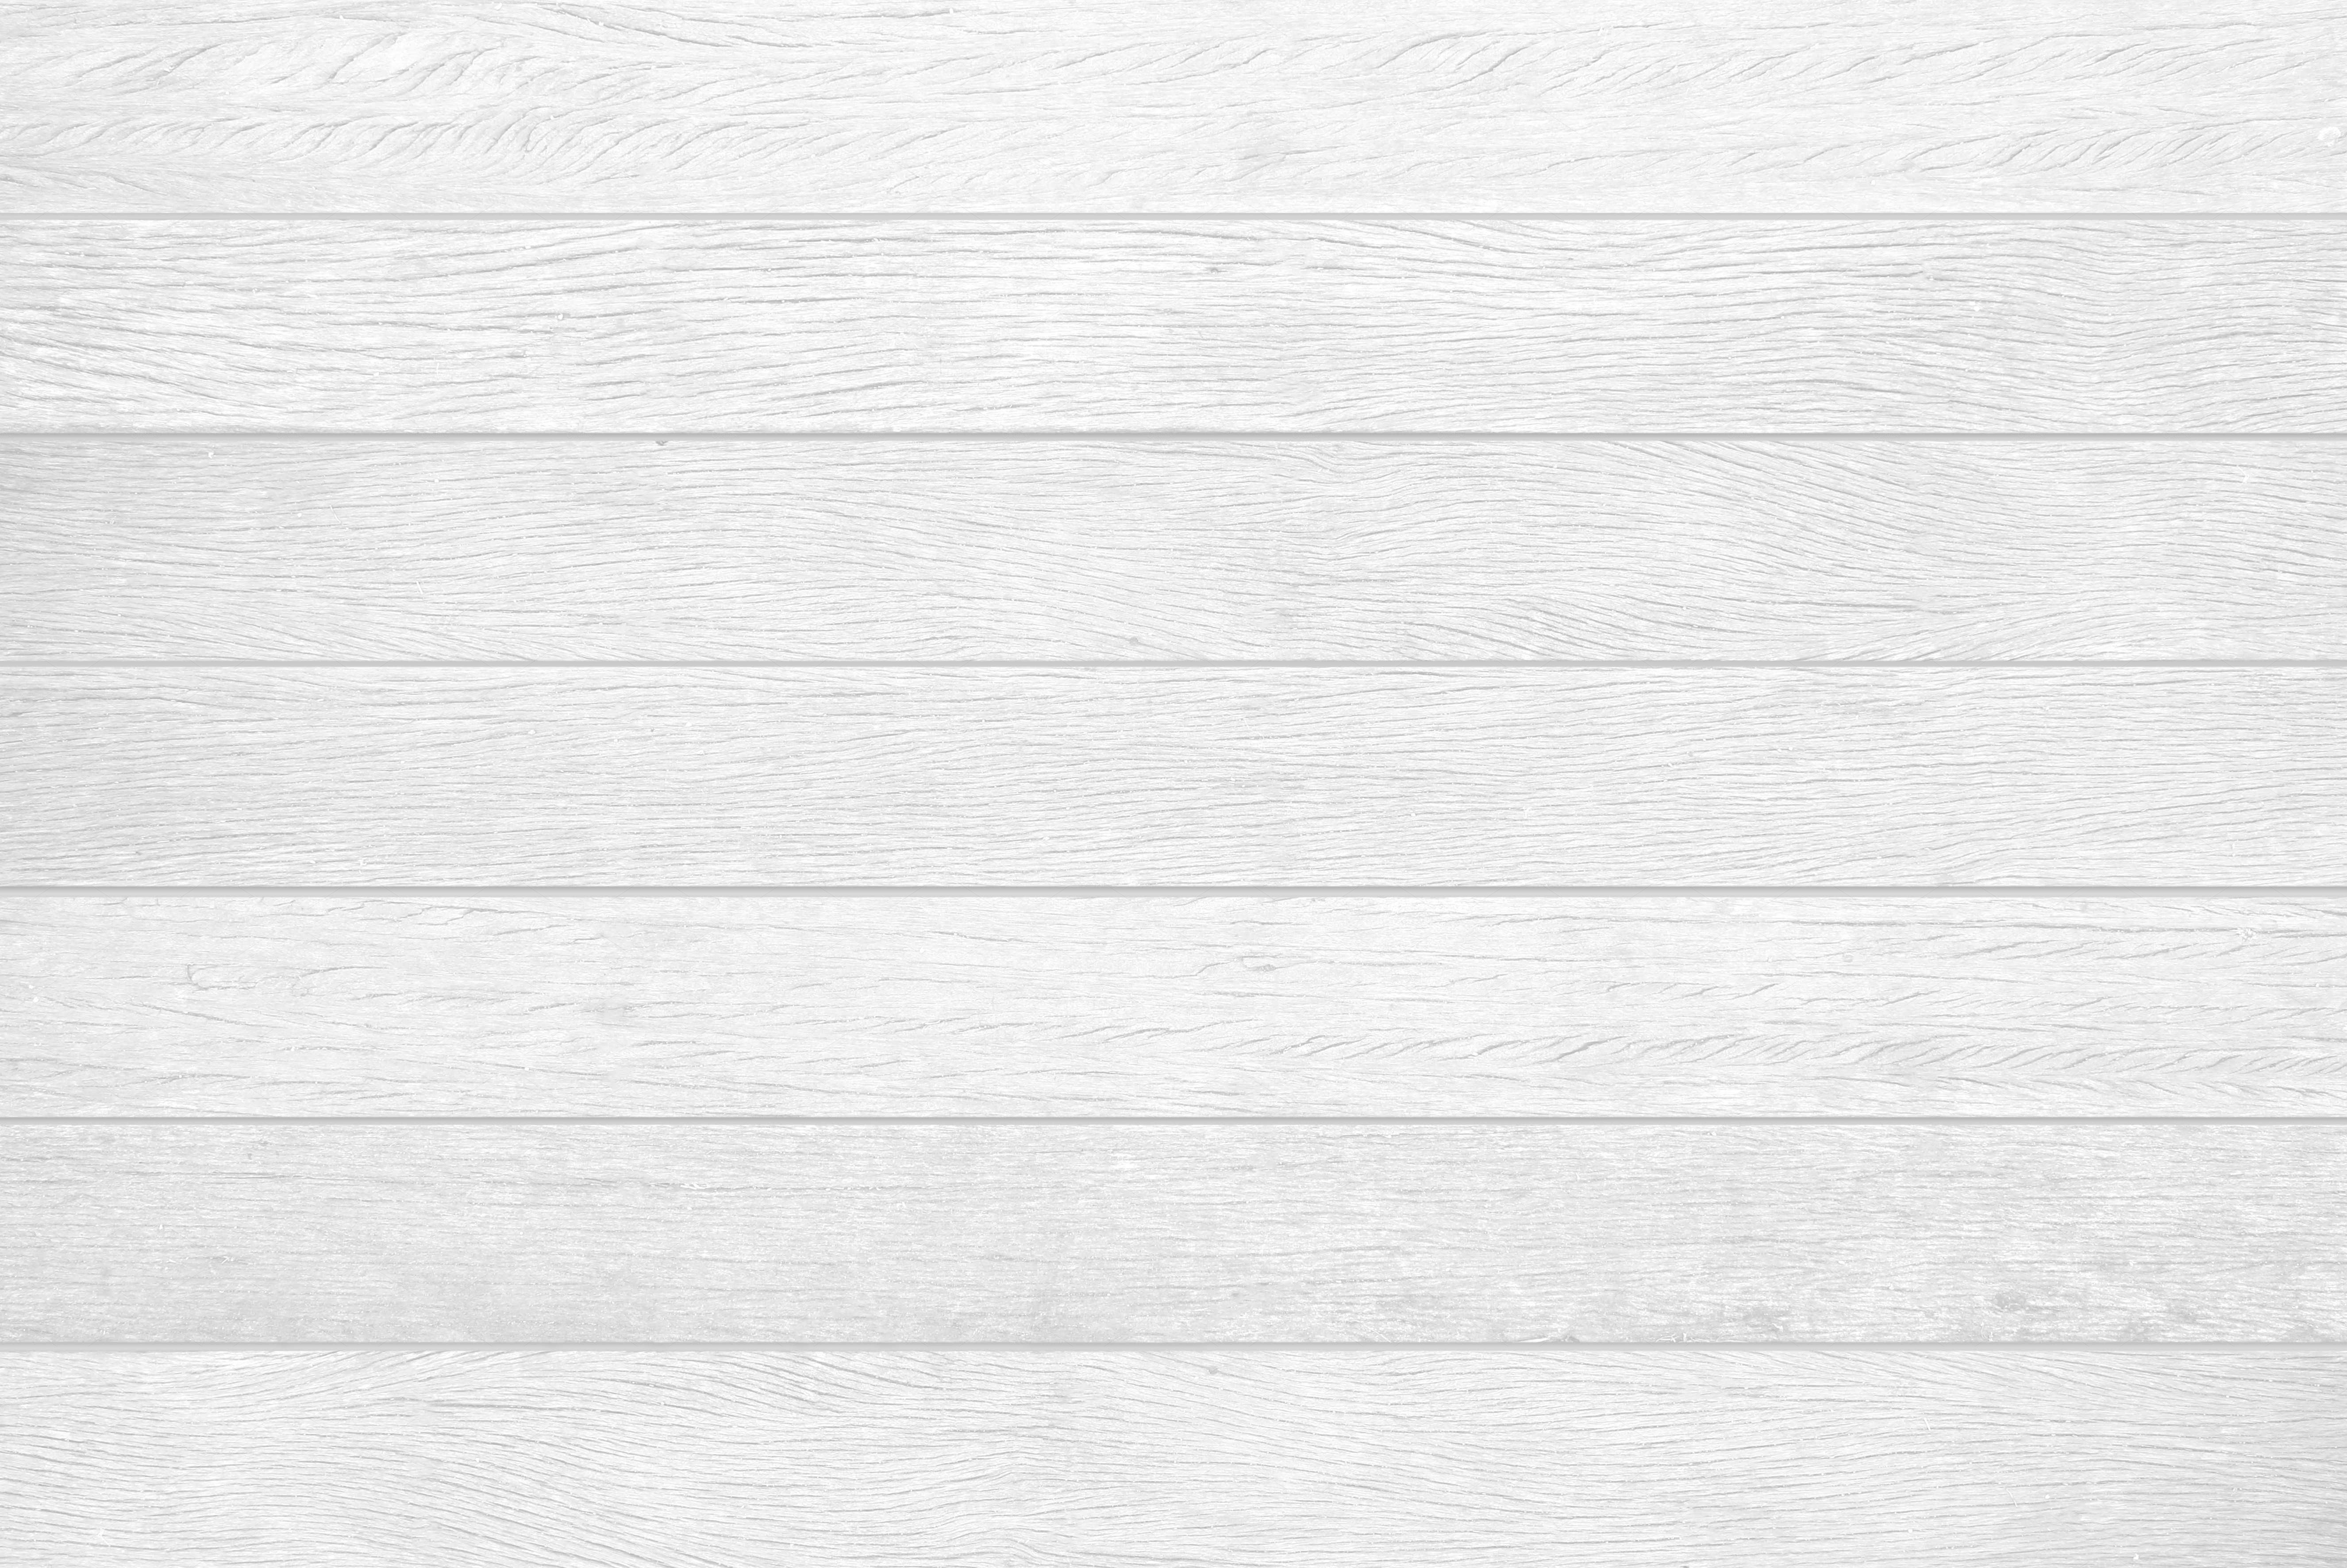 white wood floor texture 14 682